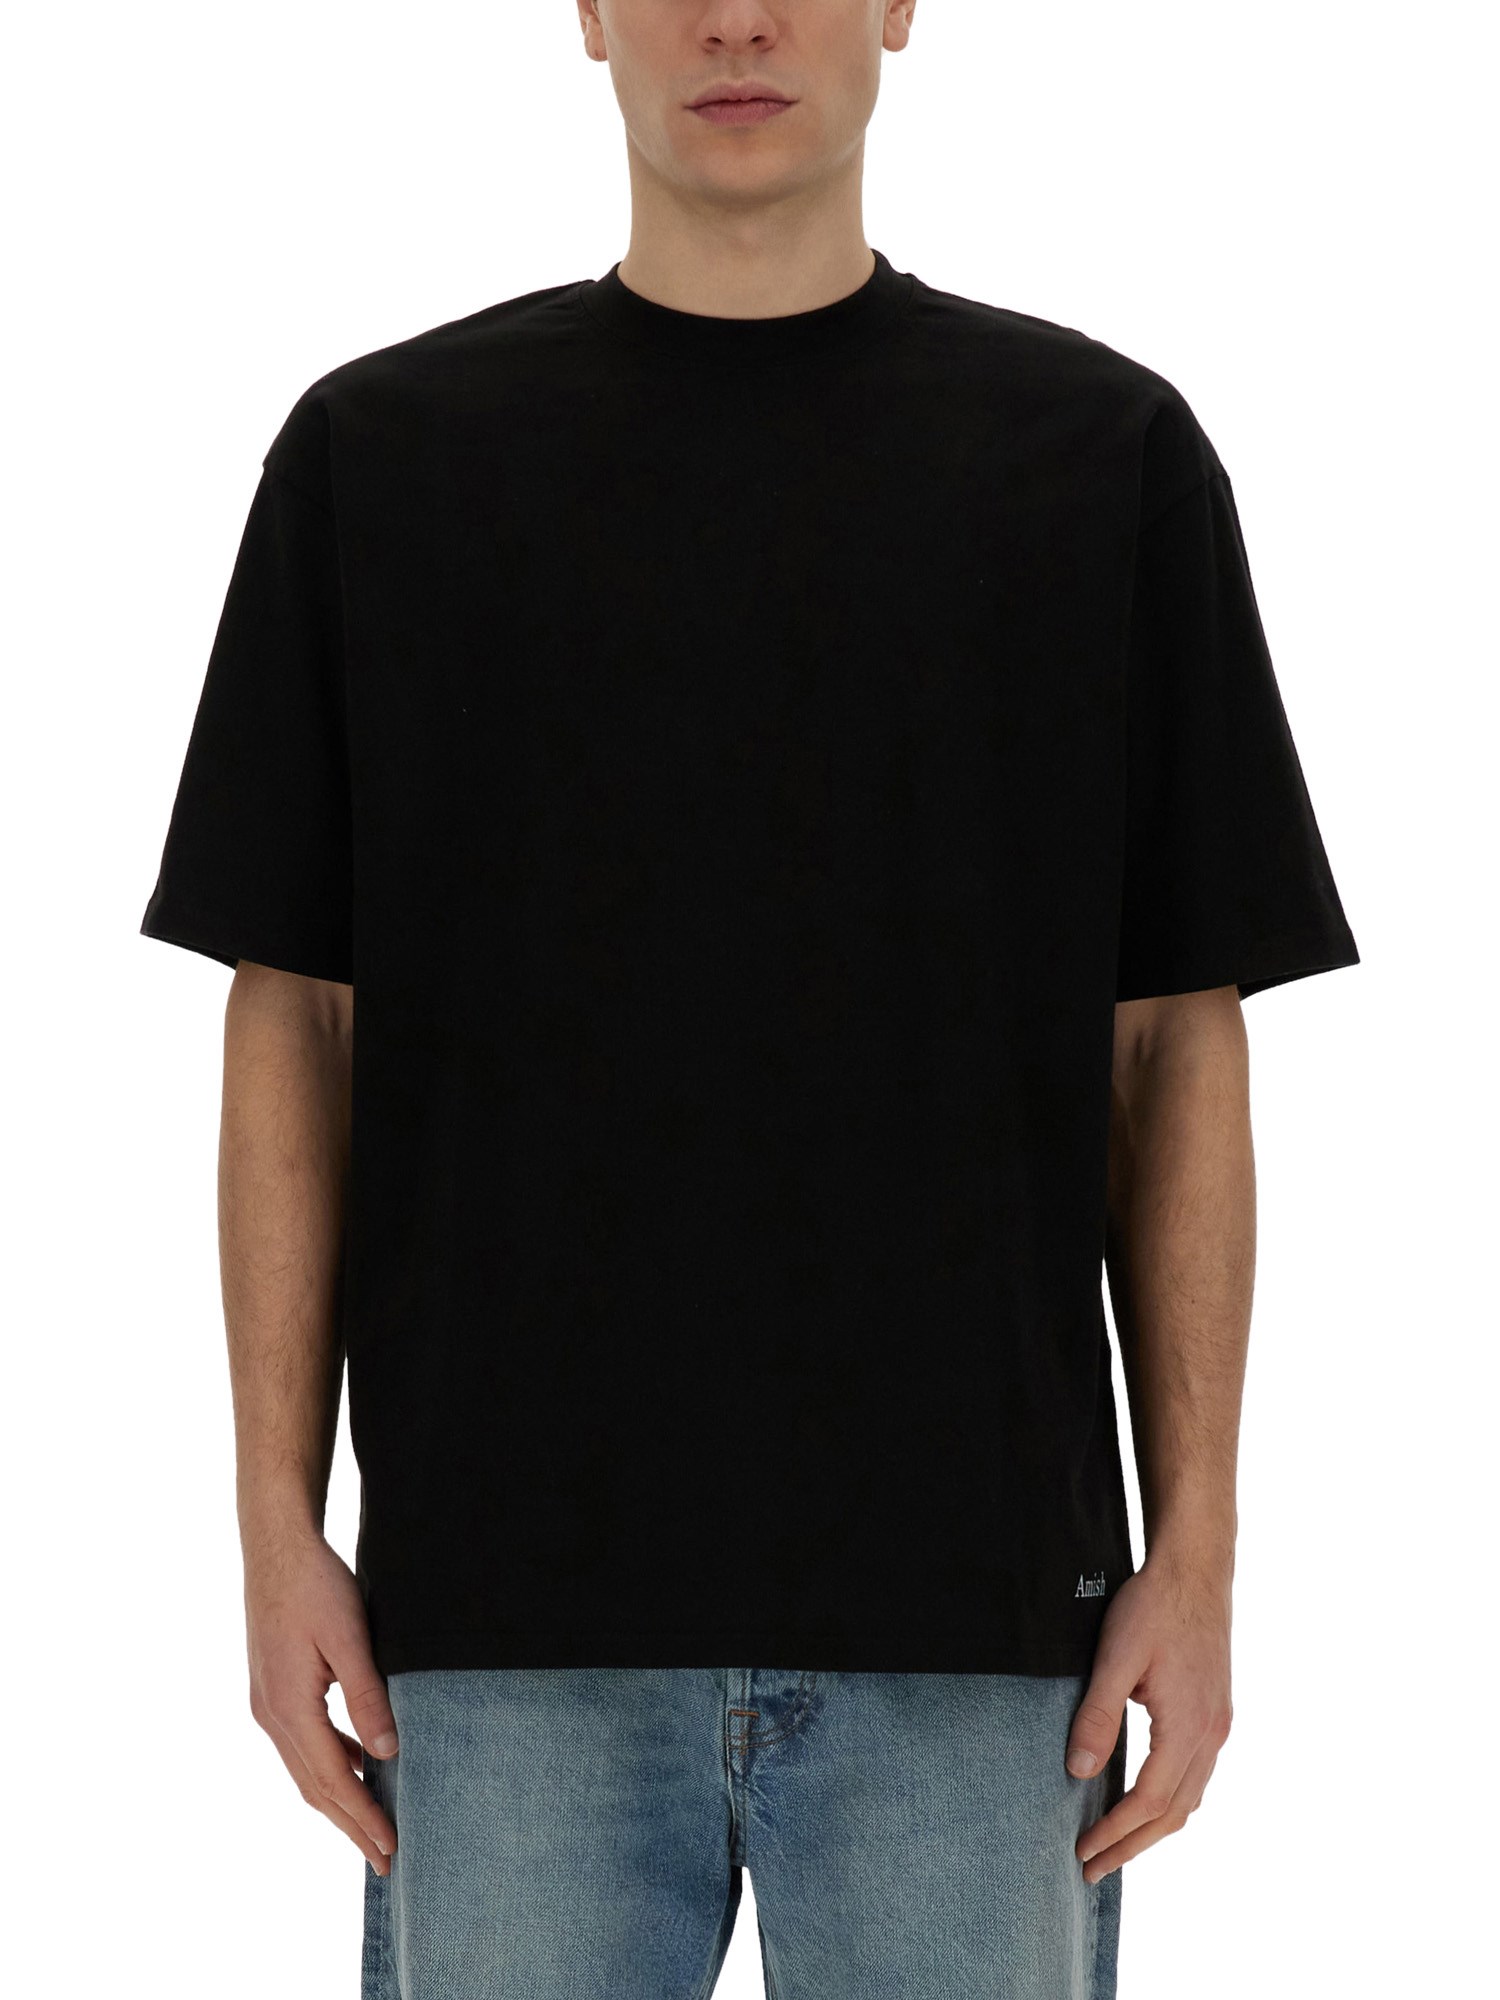 Amish amish oversize t-shirt